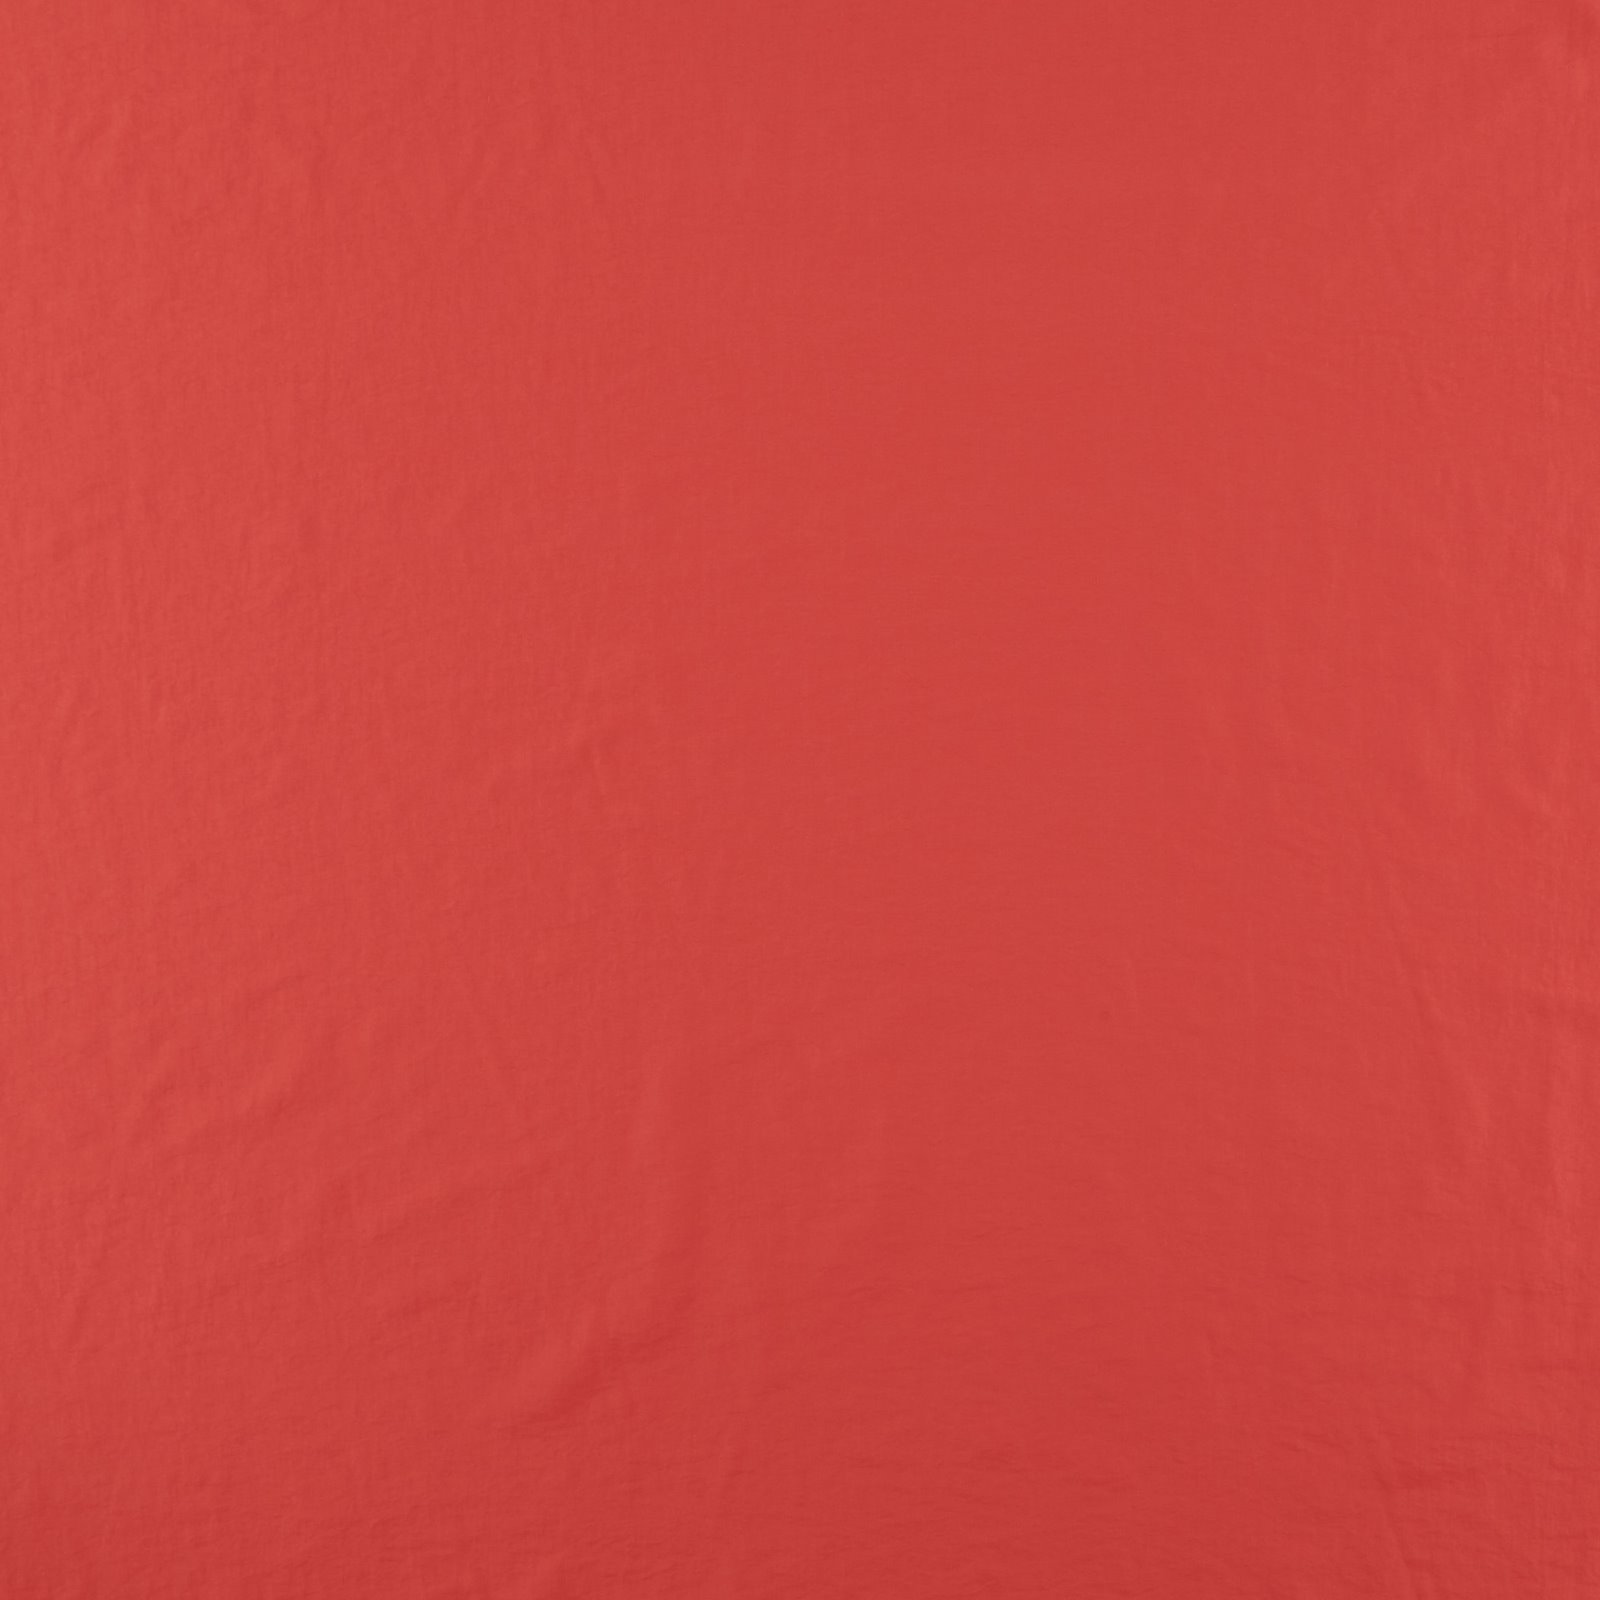 Vævet taslan med struktur lys klar rød 560300_pack_solid